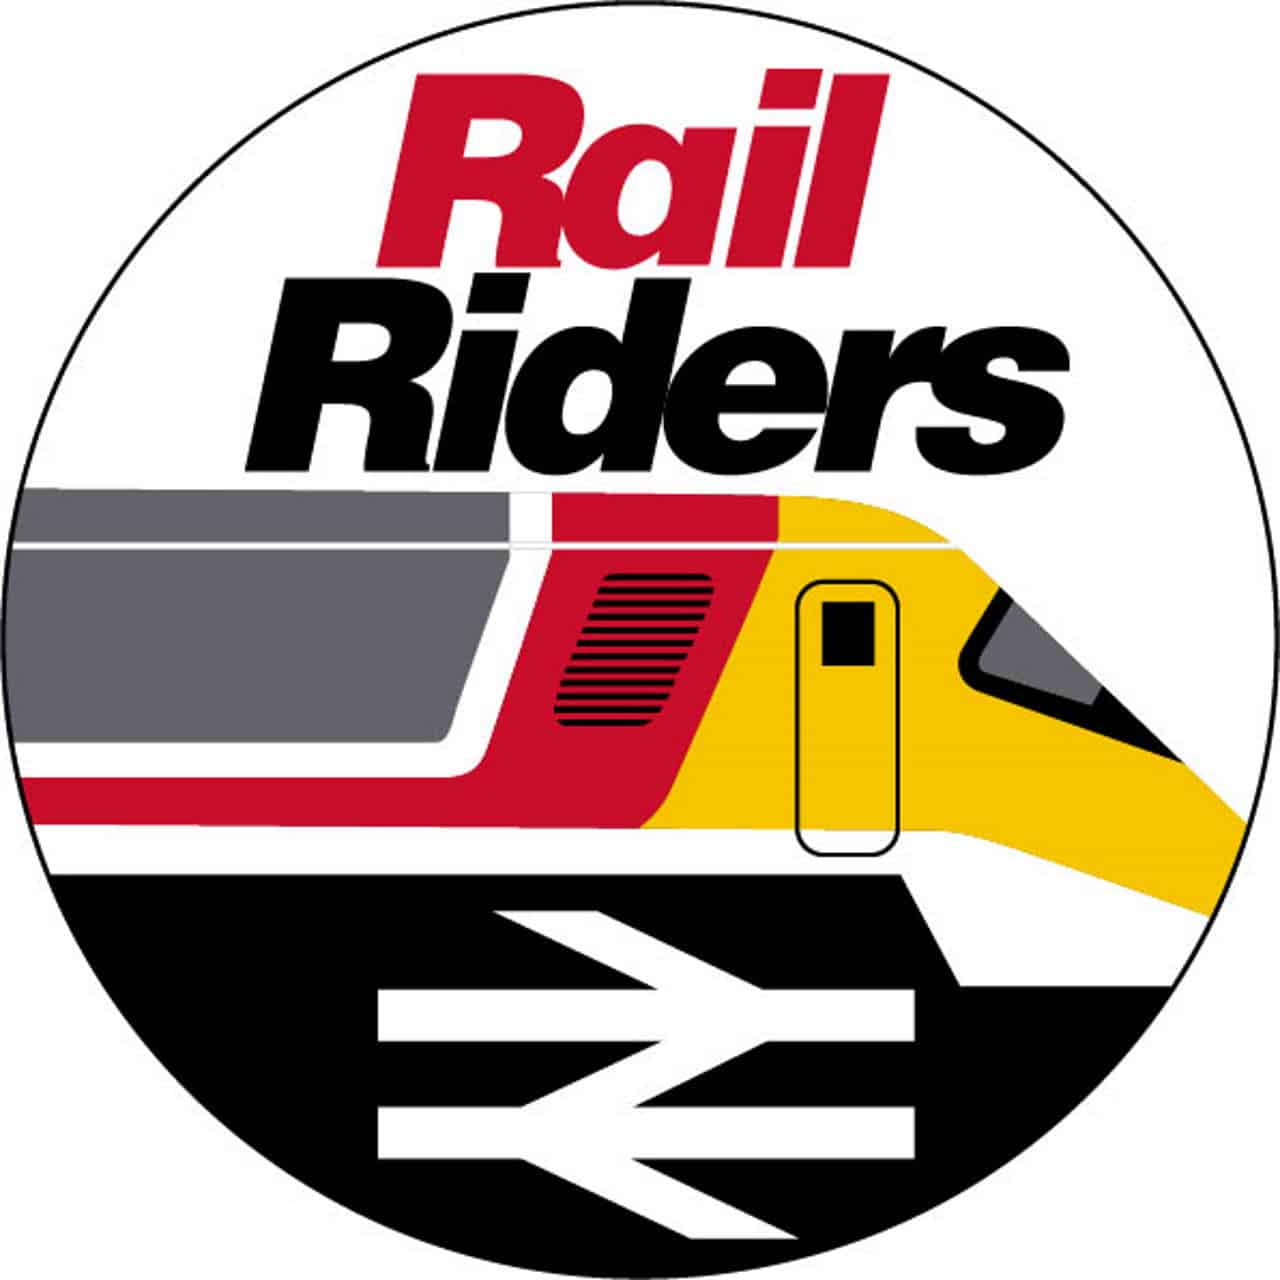 rail travel gift vouchers uk